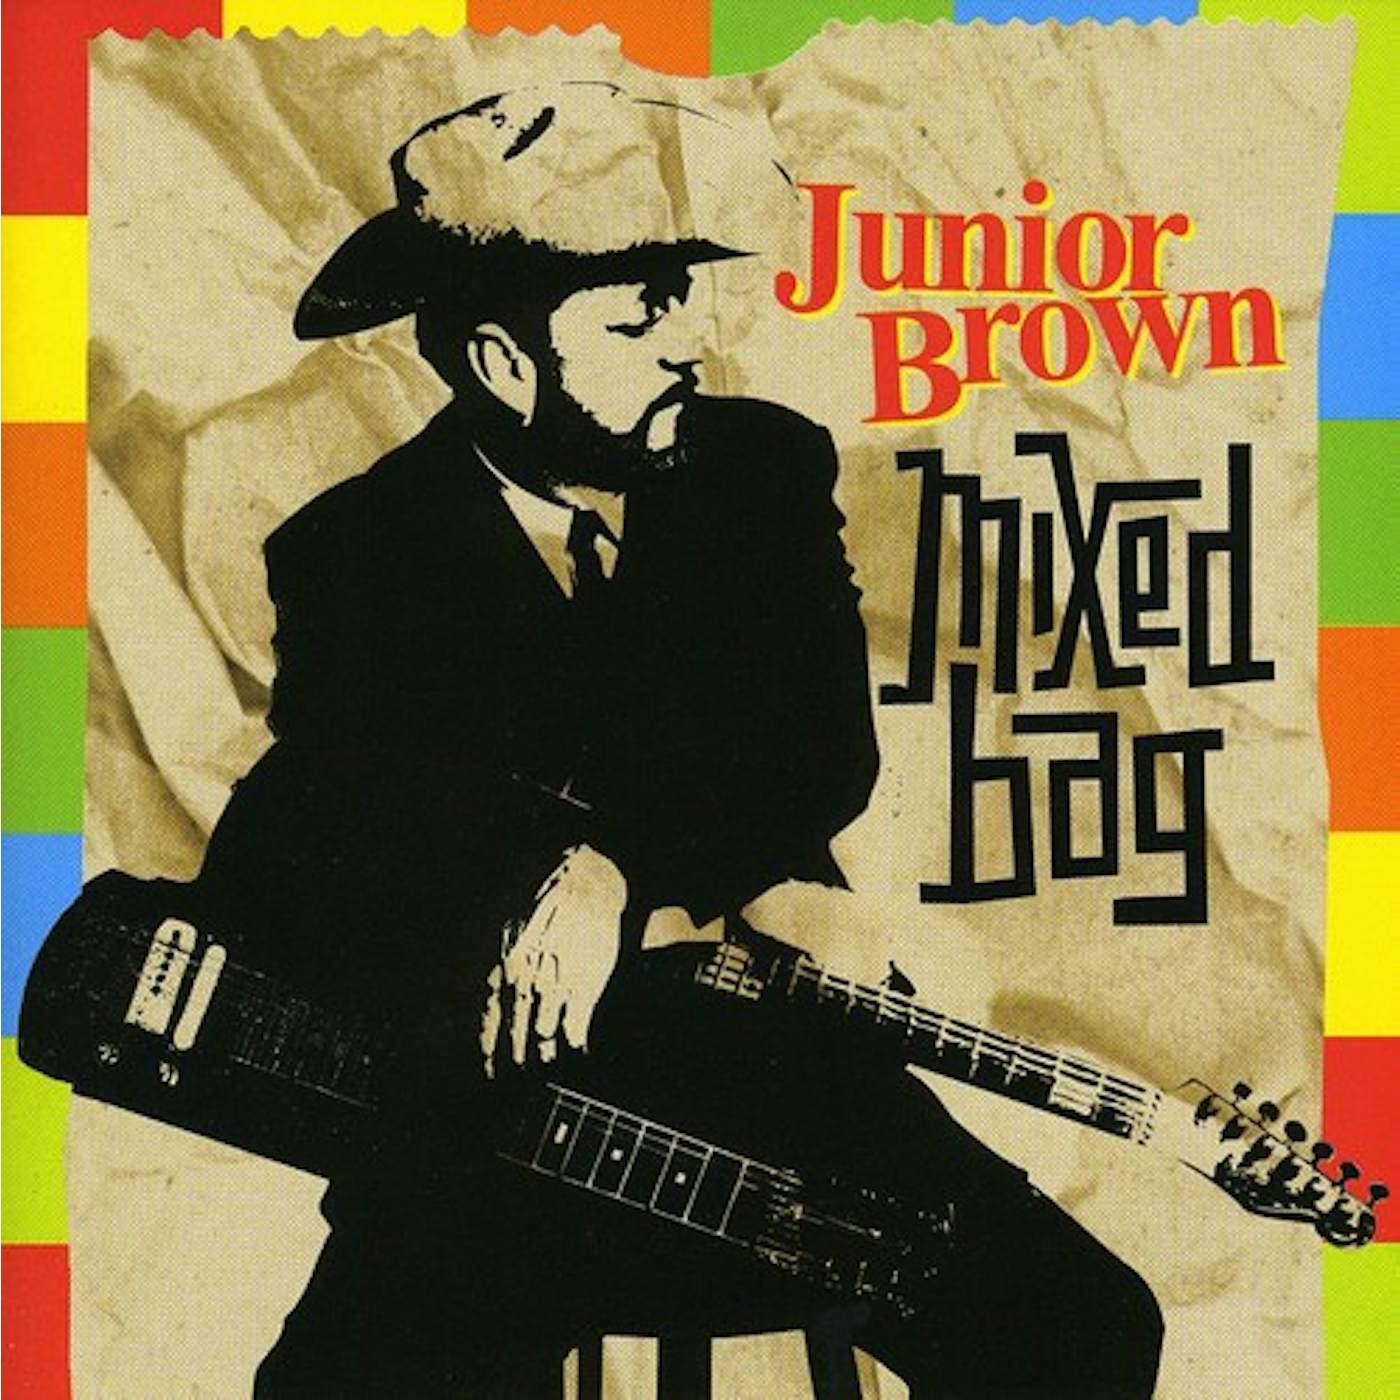 Junior Brown MIXED BAG CD